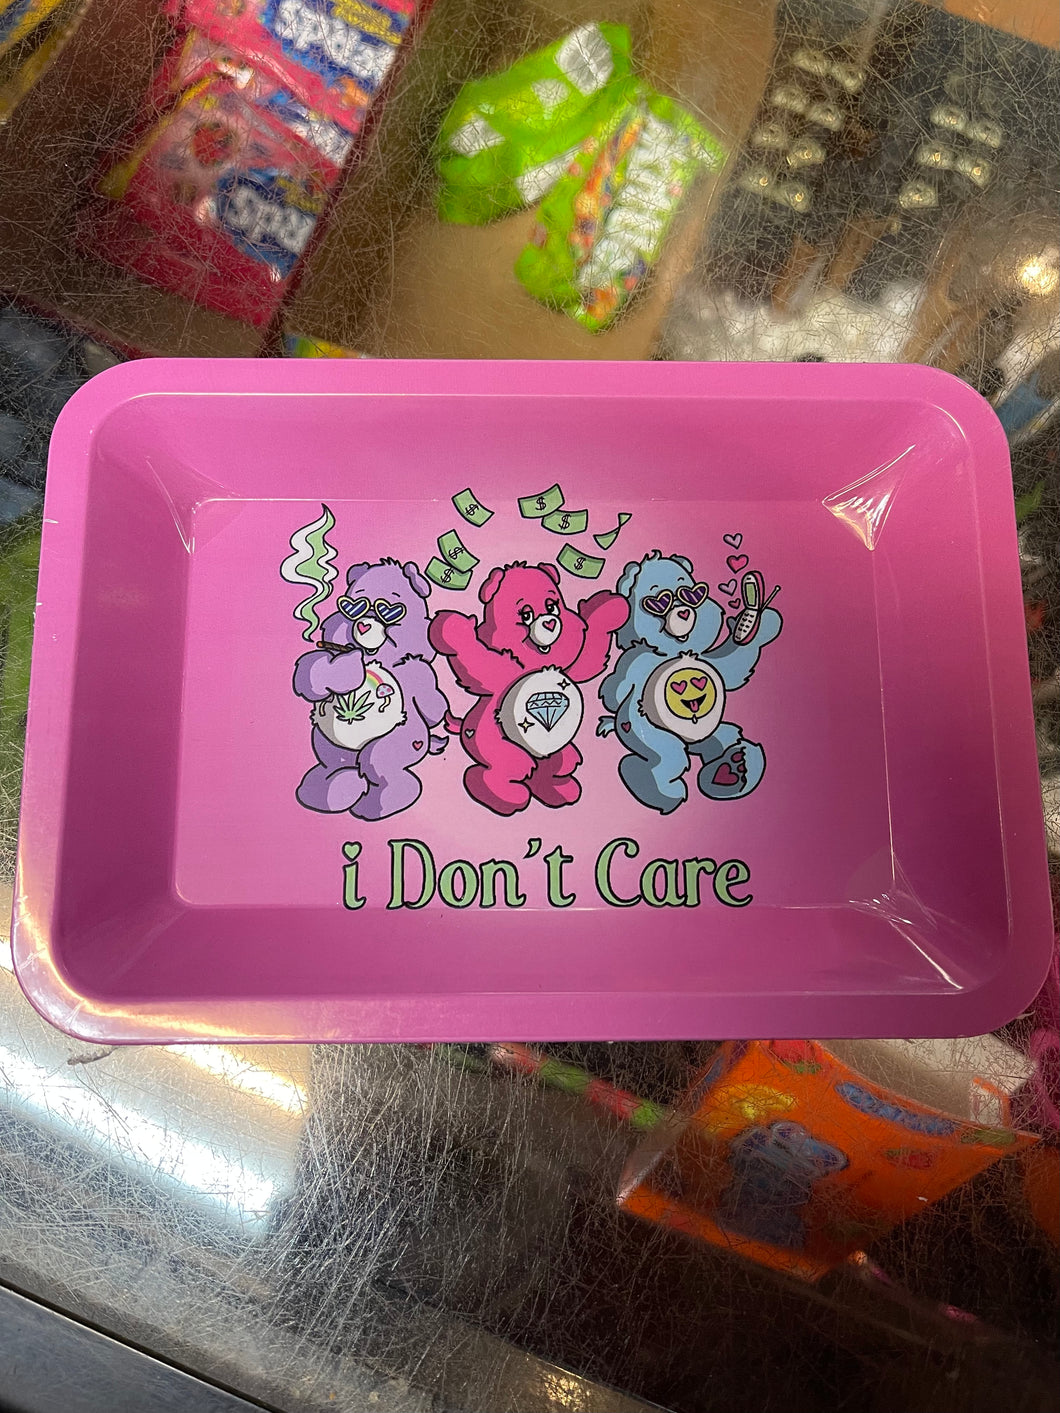 I don’t care tray